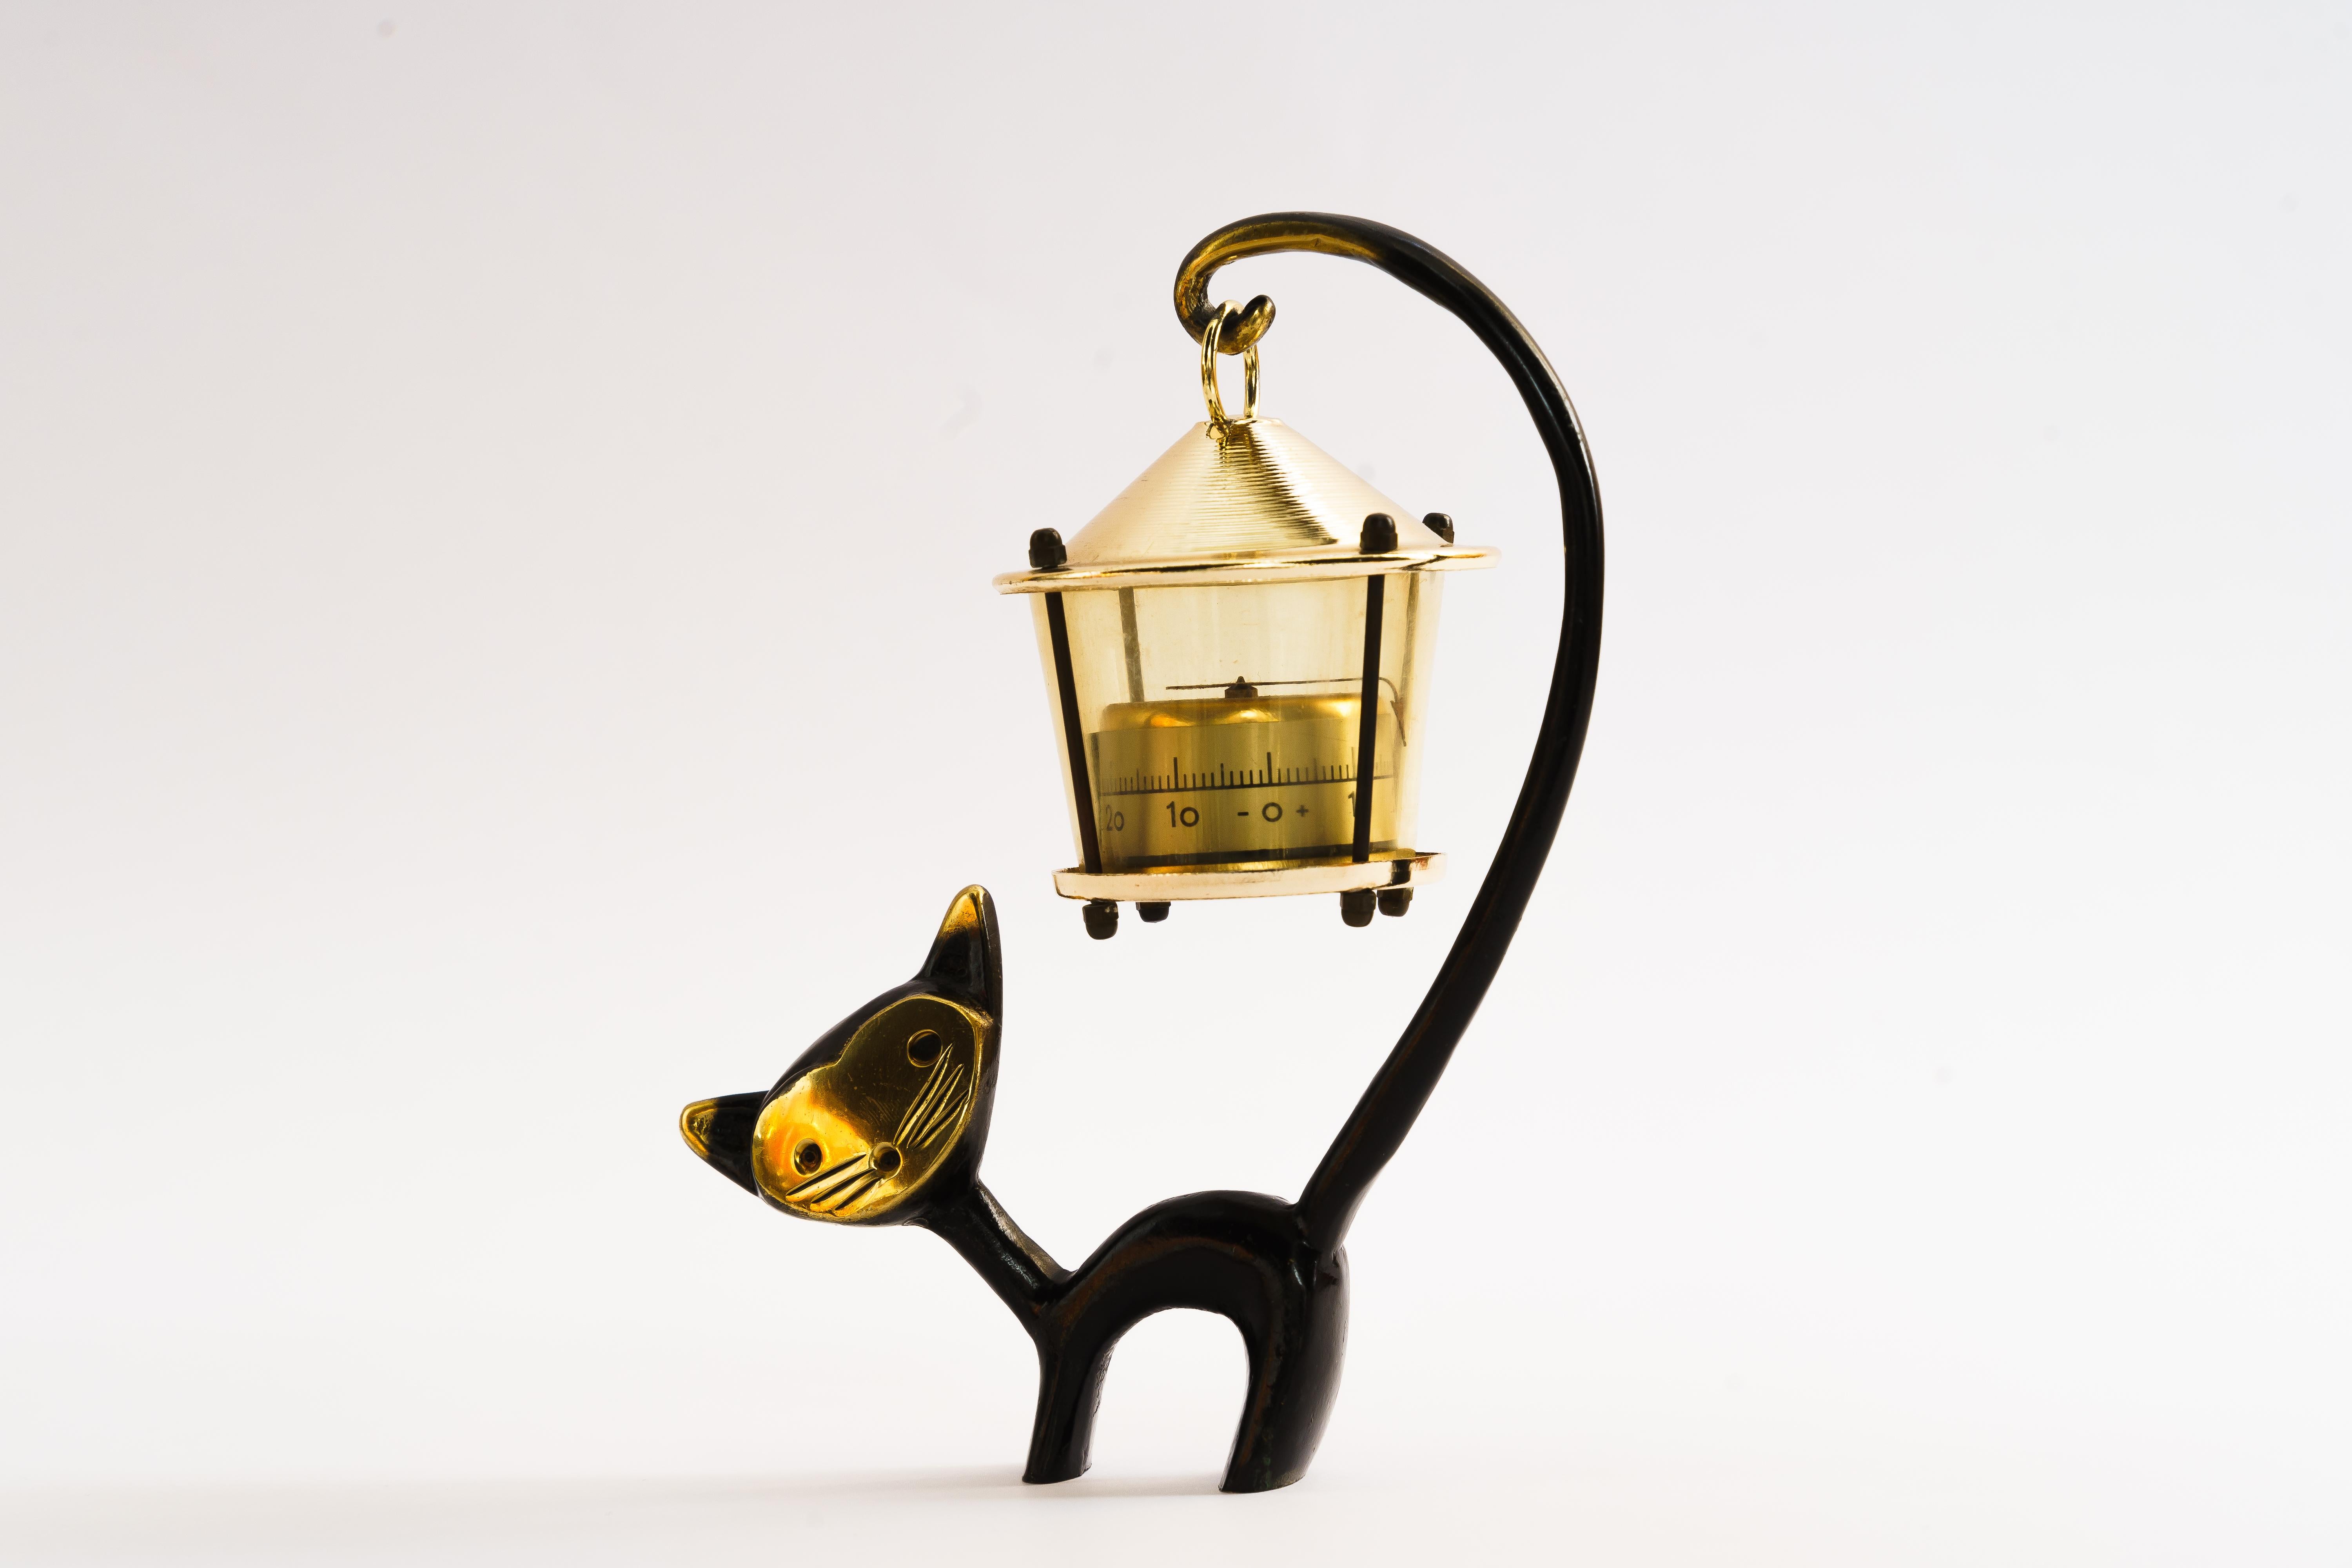 Un très charmant thermomètre de bureau autrichien, composé d'une jolie figurine de chat et d'un thermomètre en forme de lanterne. 
Un design très humoristique de Walter Bosse, exécuté par Hertha Baller Austria dans les années 1950. 
En laiton, en